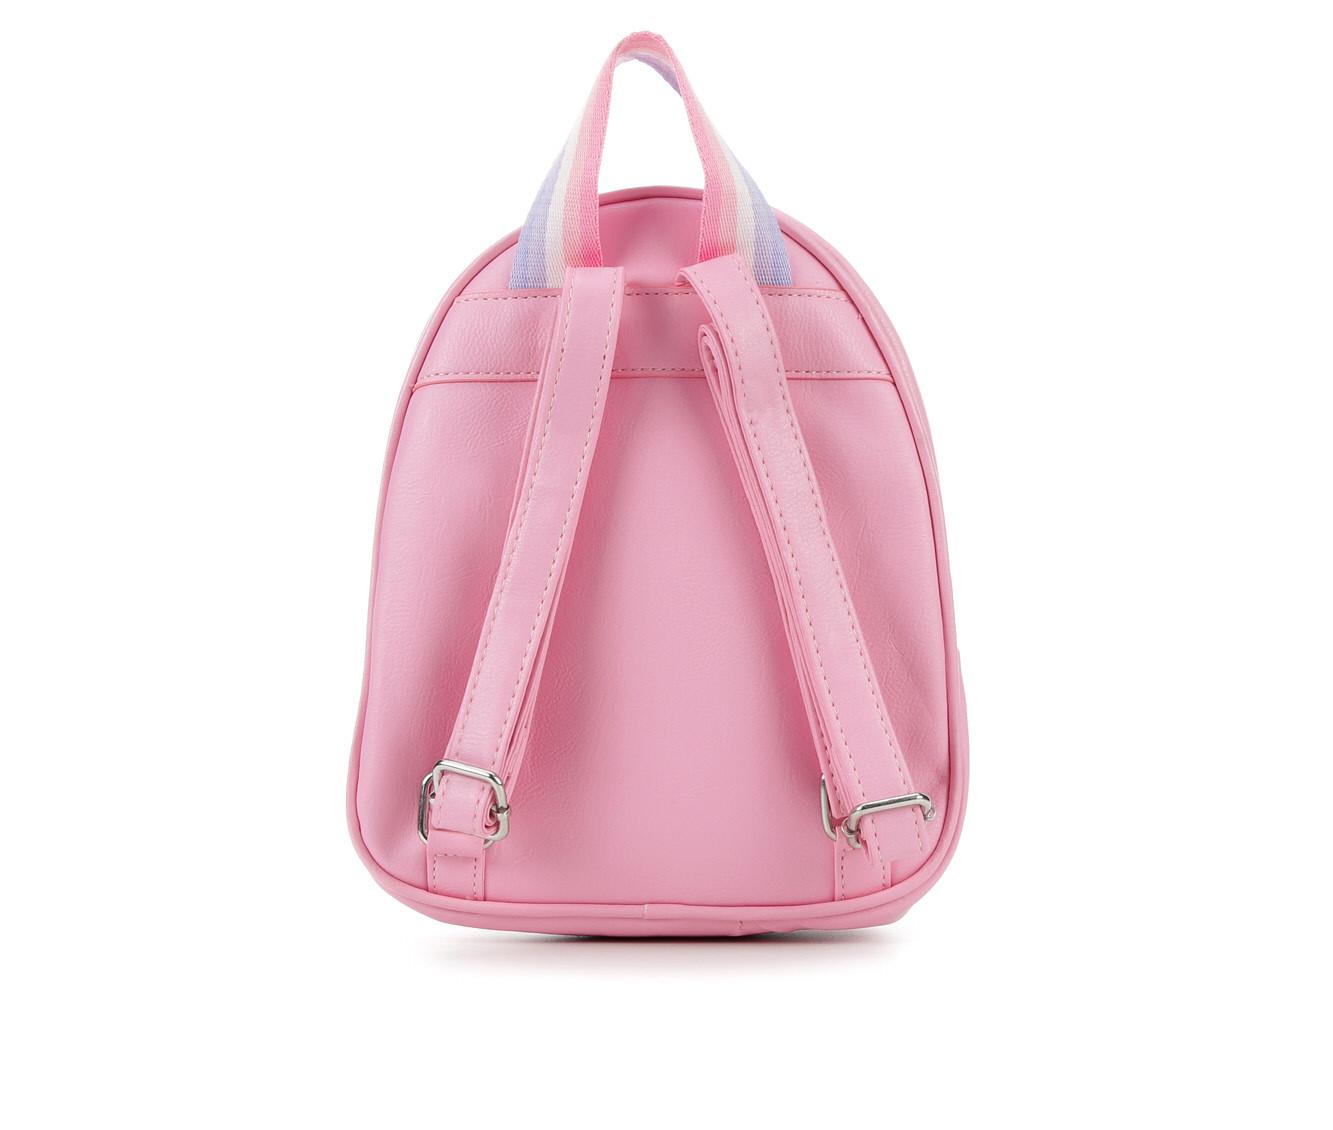 OMG Accessories Flamingo Mini Backpack